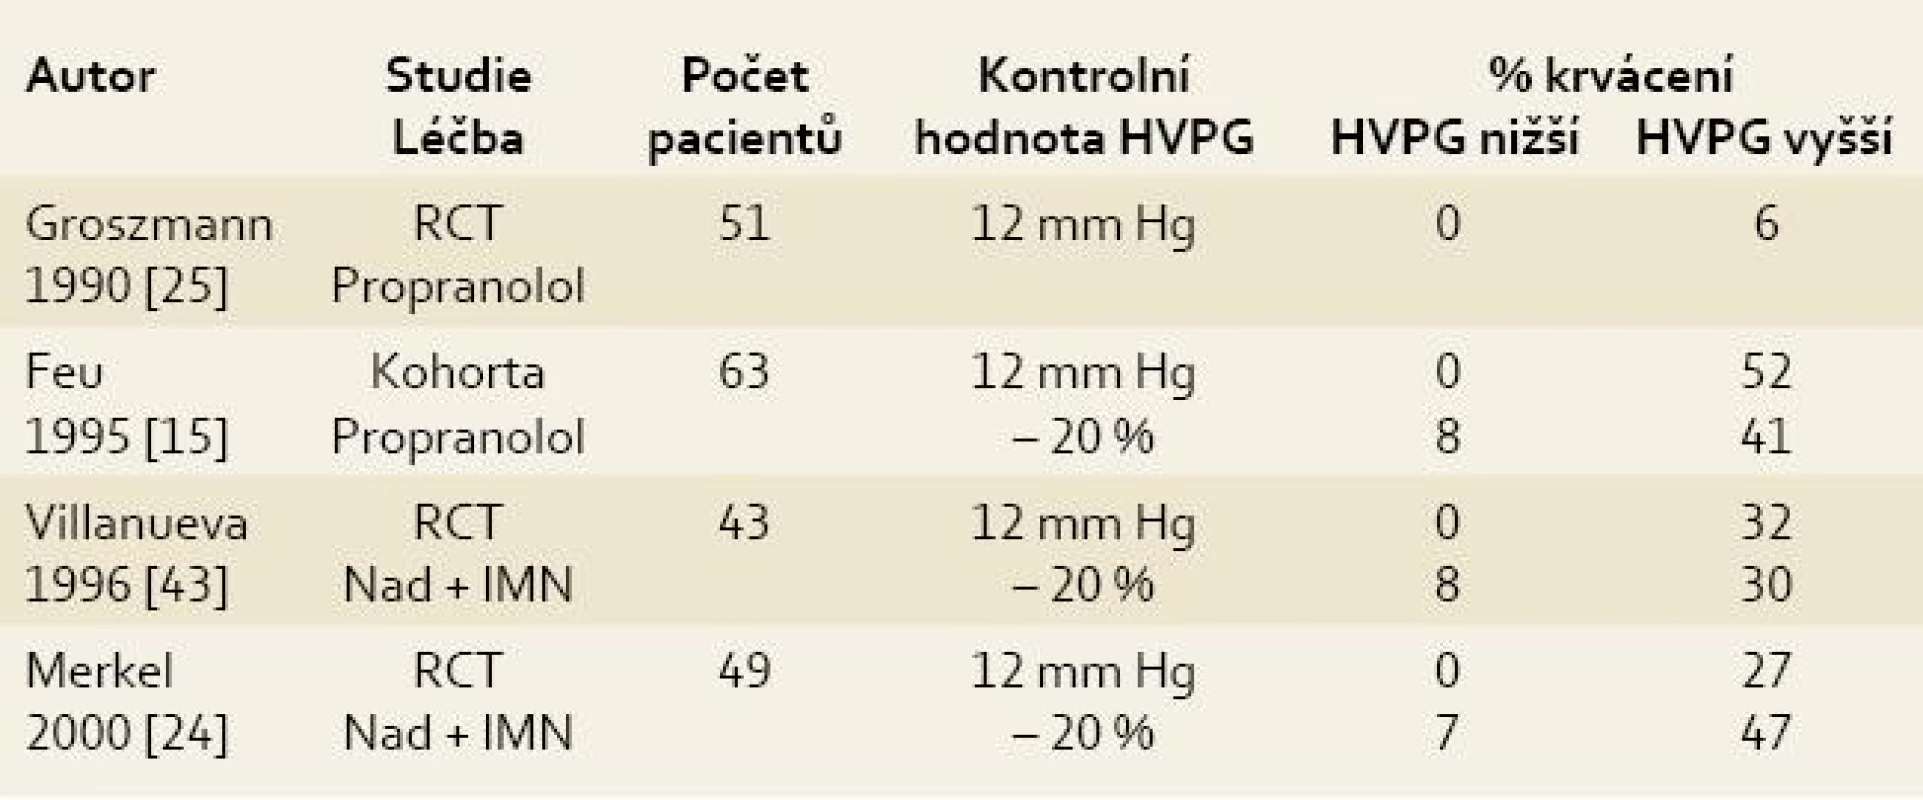 Význam opakovaného měření HVPG v prevenci krvácení z jícnových varixů.
Tab. 1. Significance of repeated HVPG measurement in the prevention of bleeding from oesophageal varices.